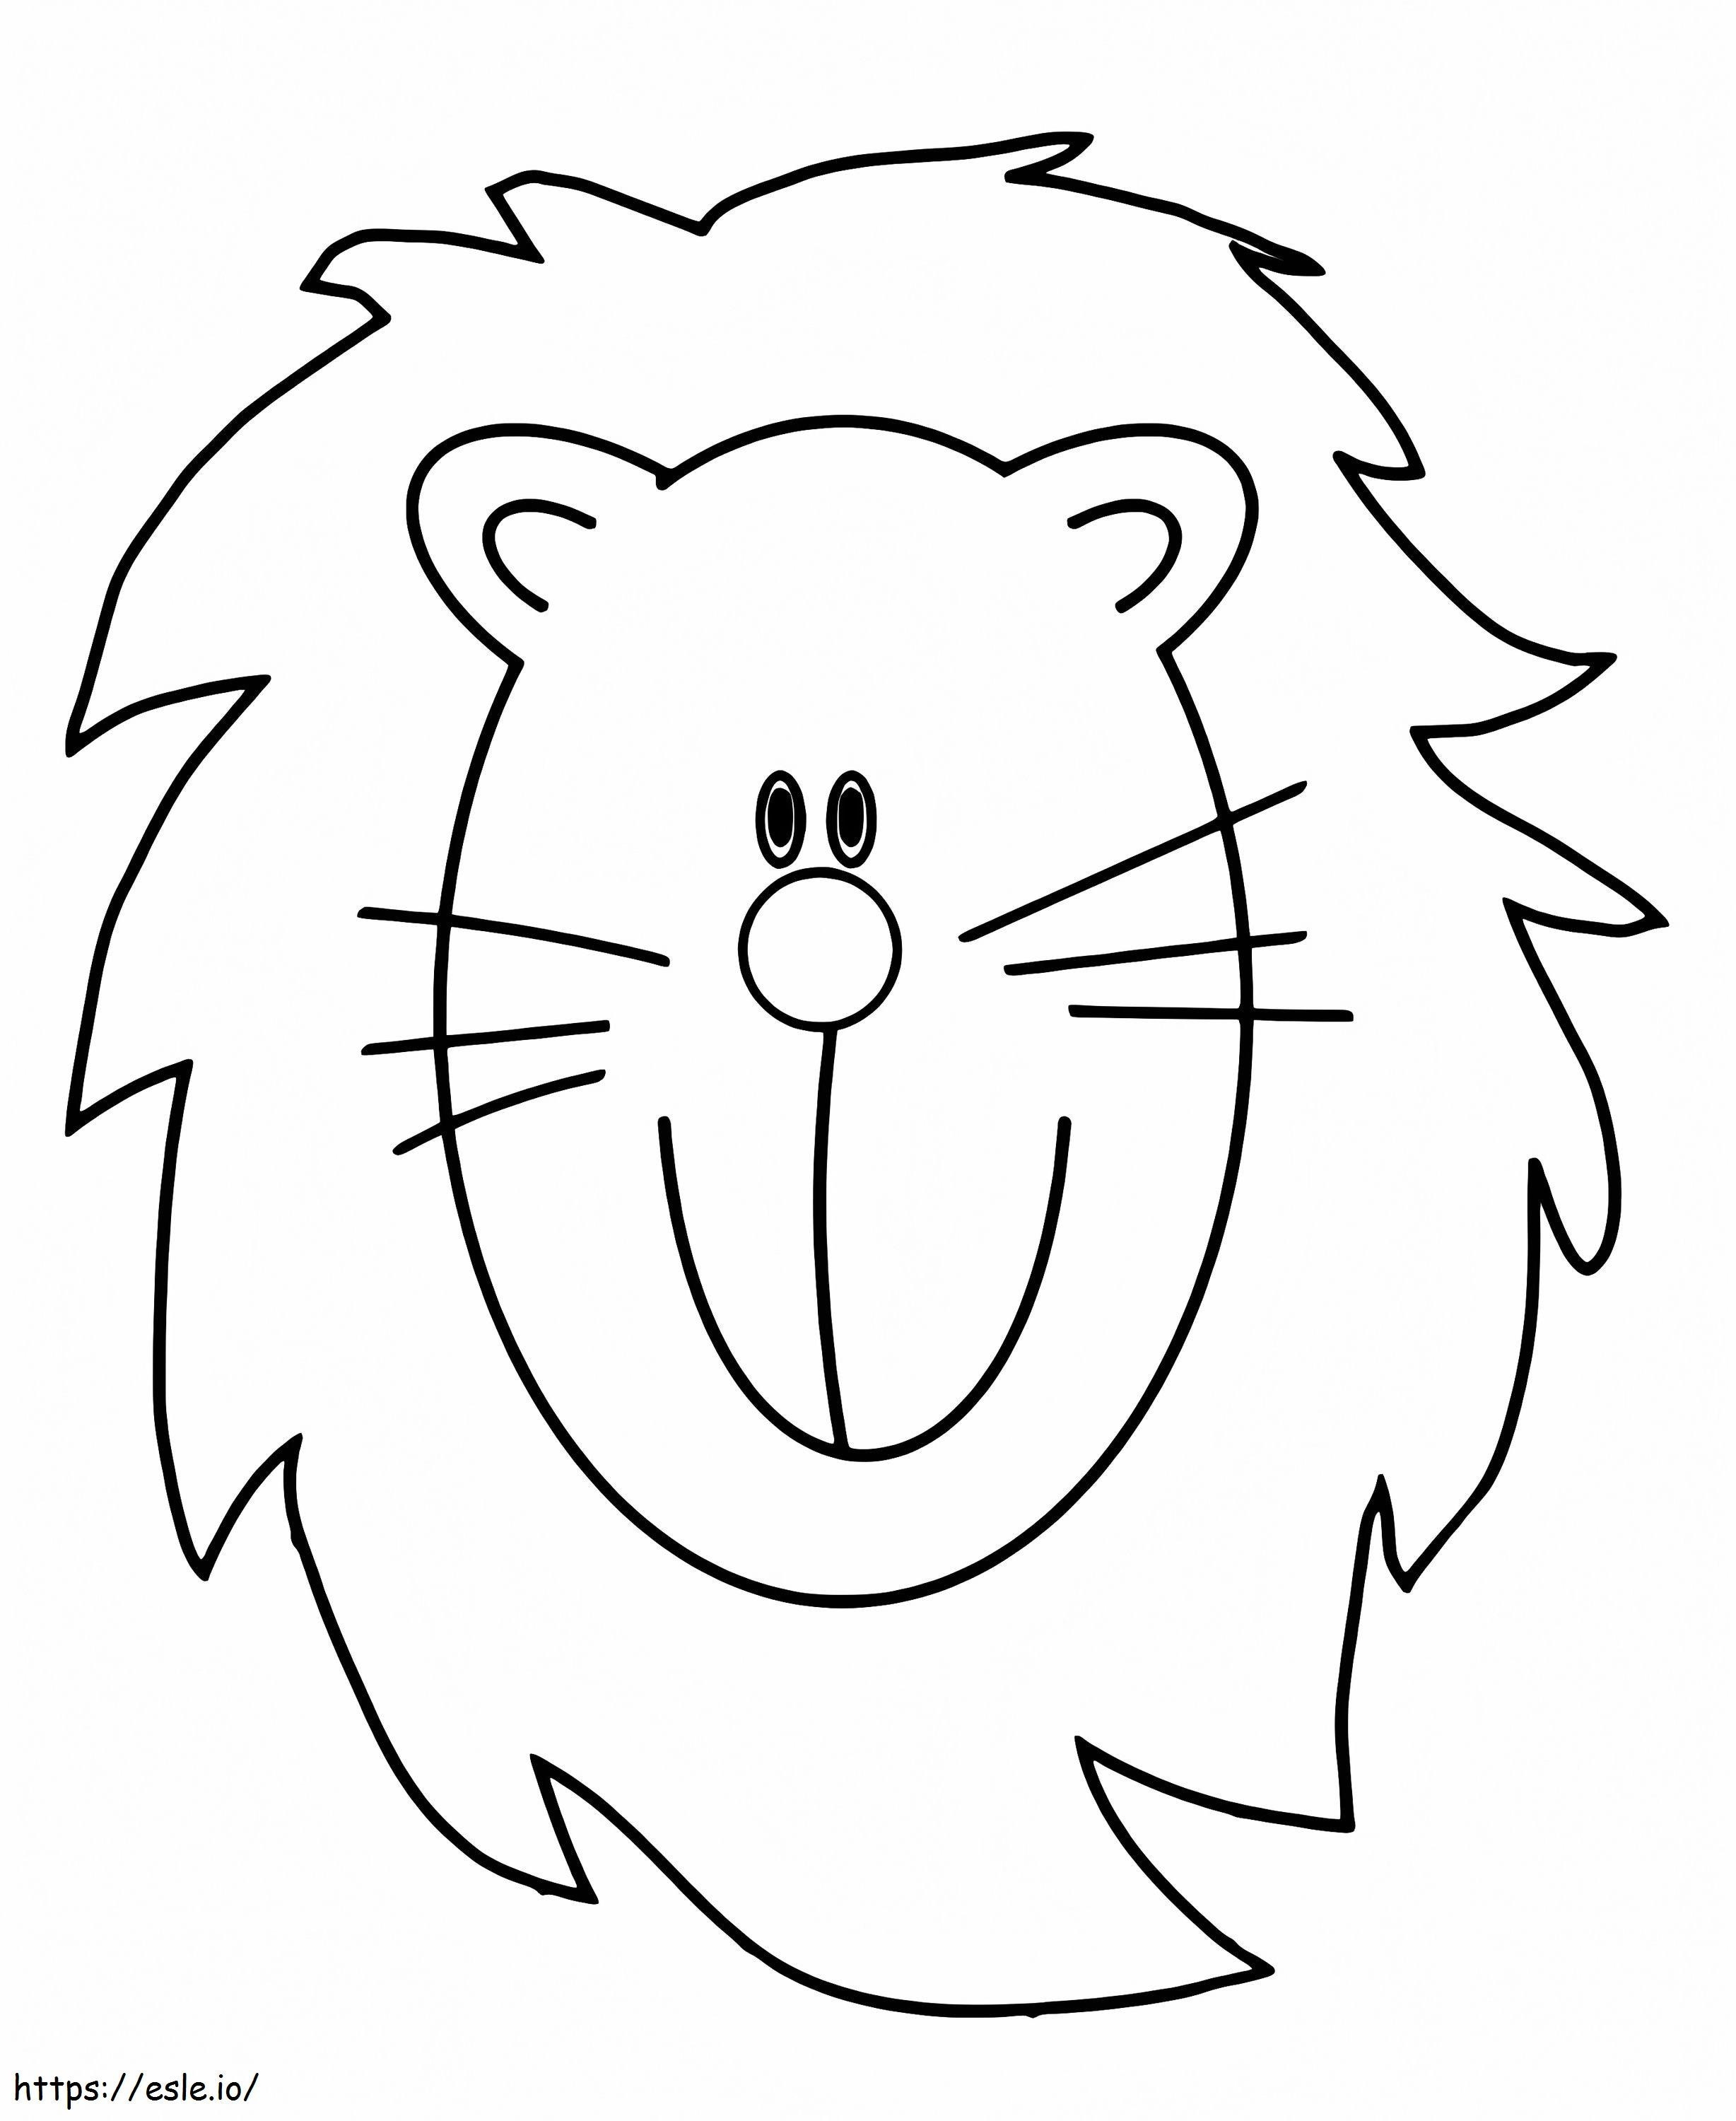 Coloriage Visage de lion gratuit à colorier à imprimer dessin